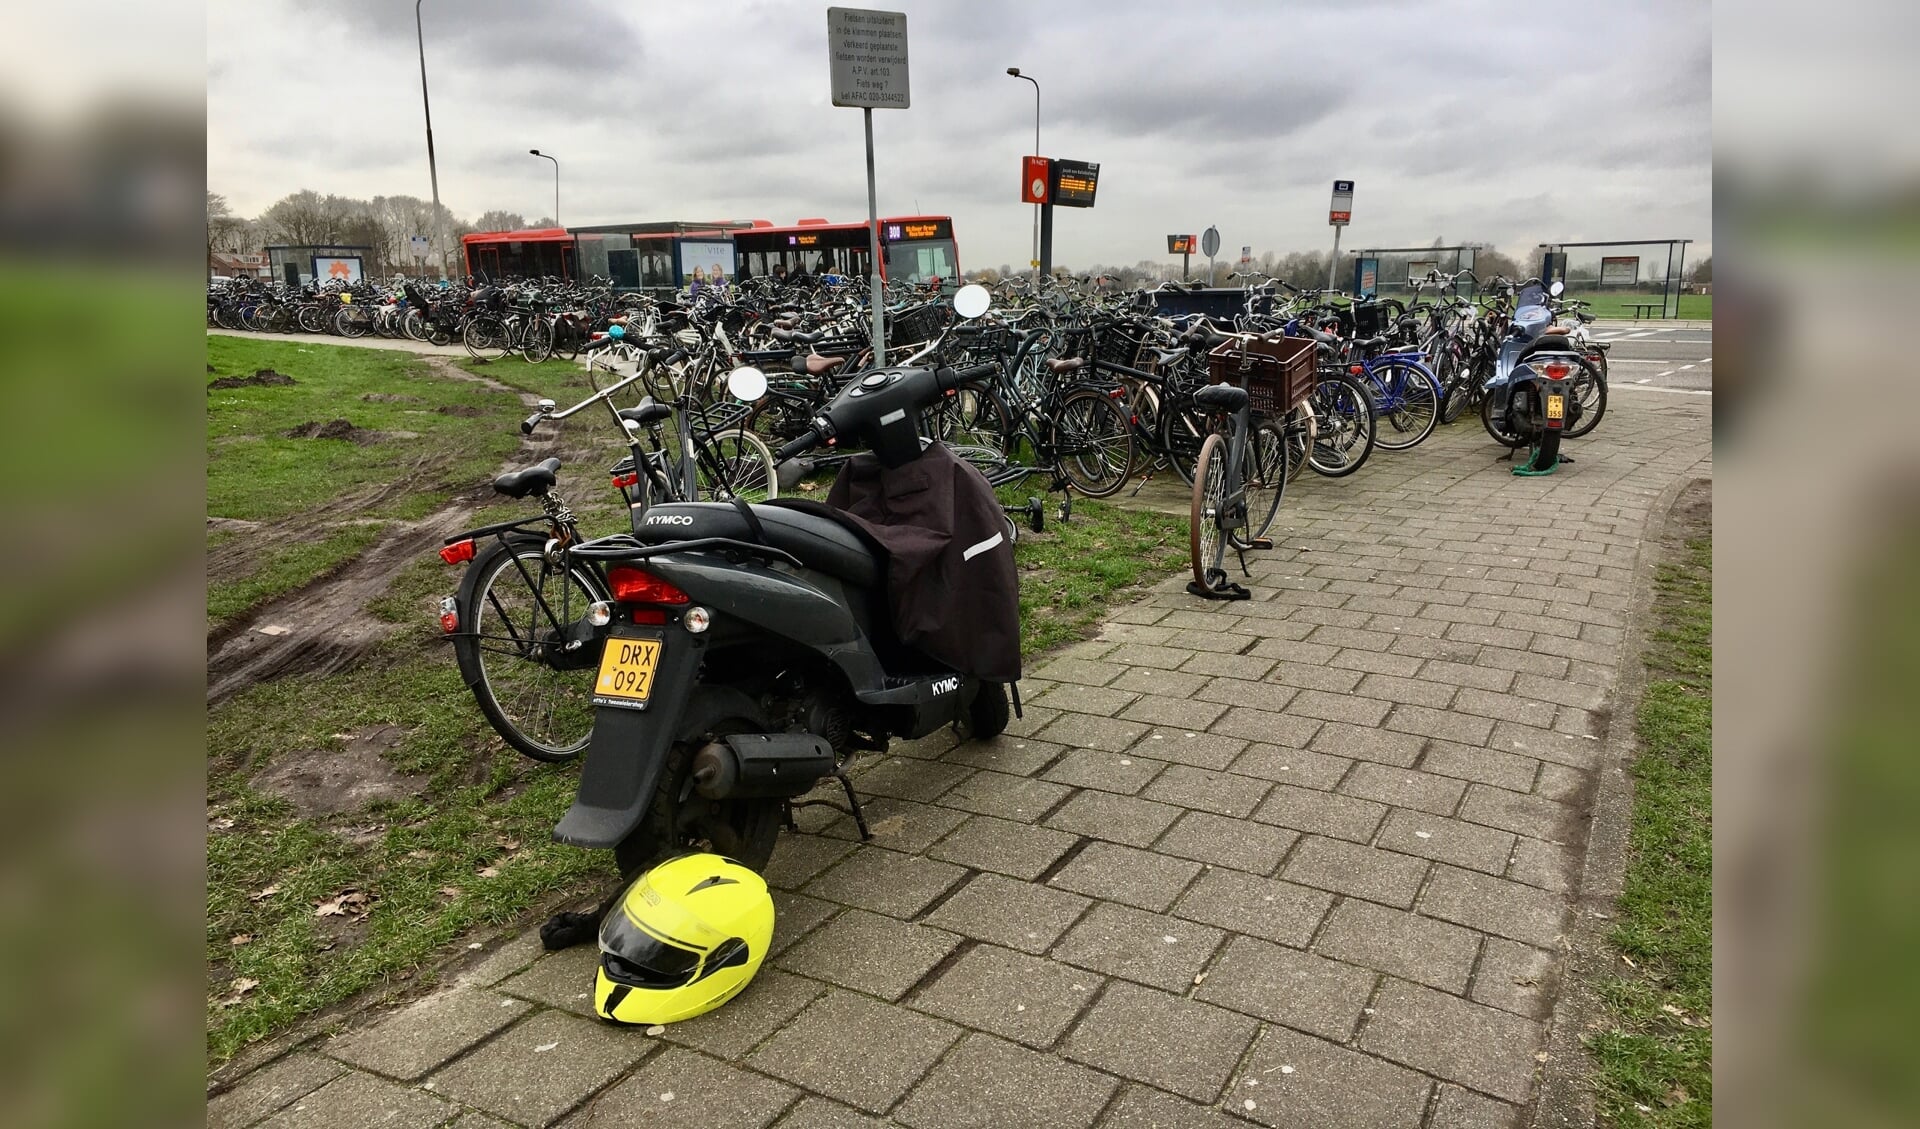 Werkgroep RO vraagt ook aandacht voor 'buitenmodel'-rijwielen zoals scooters en bakfietsen